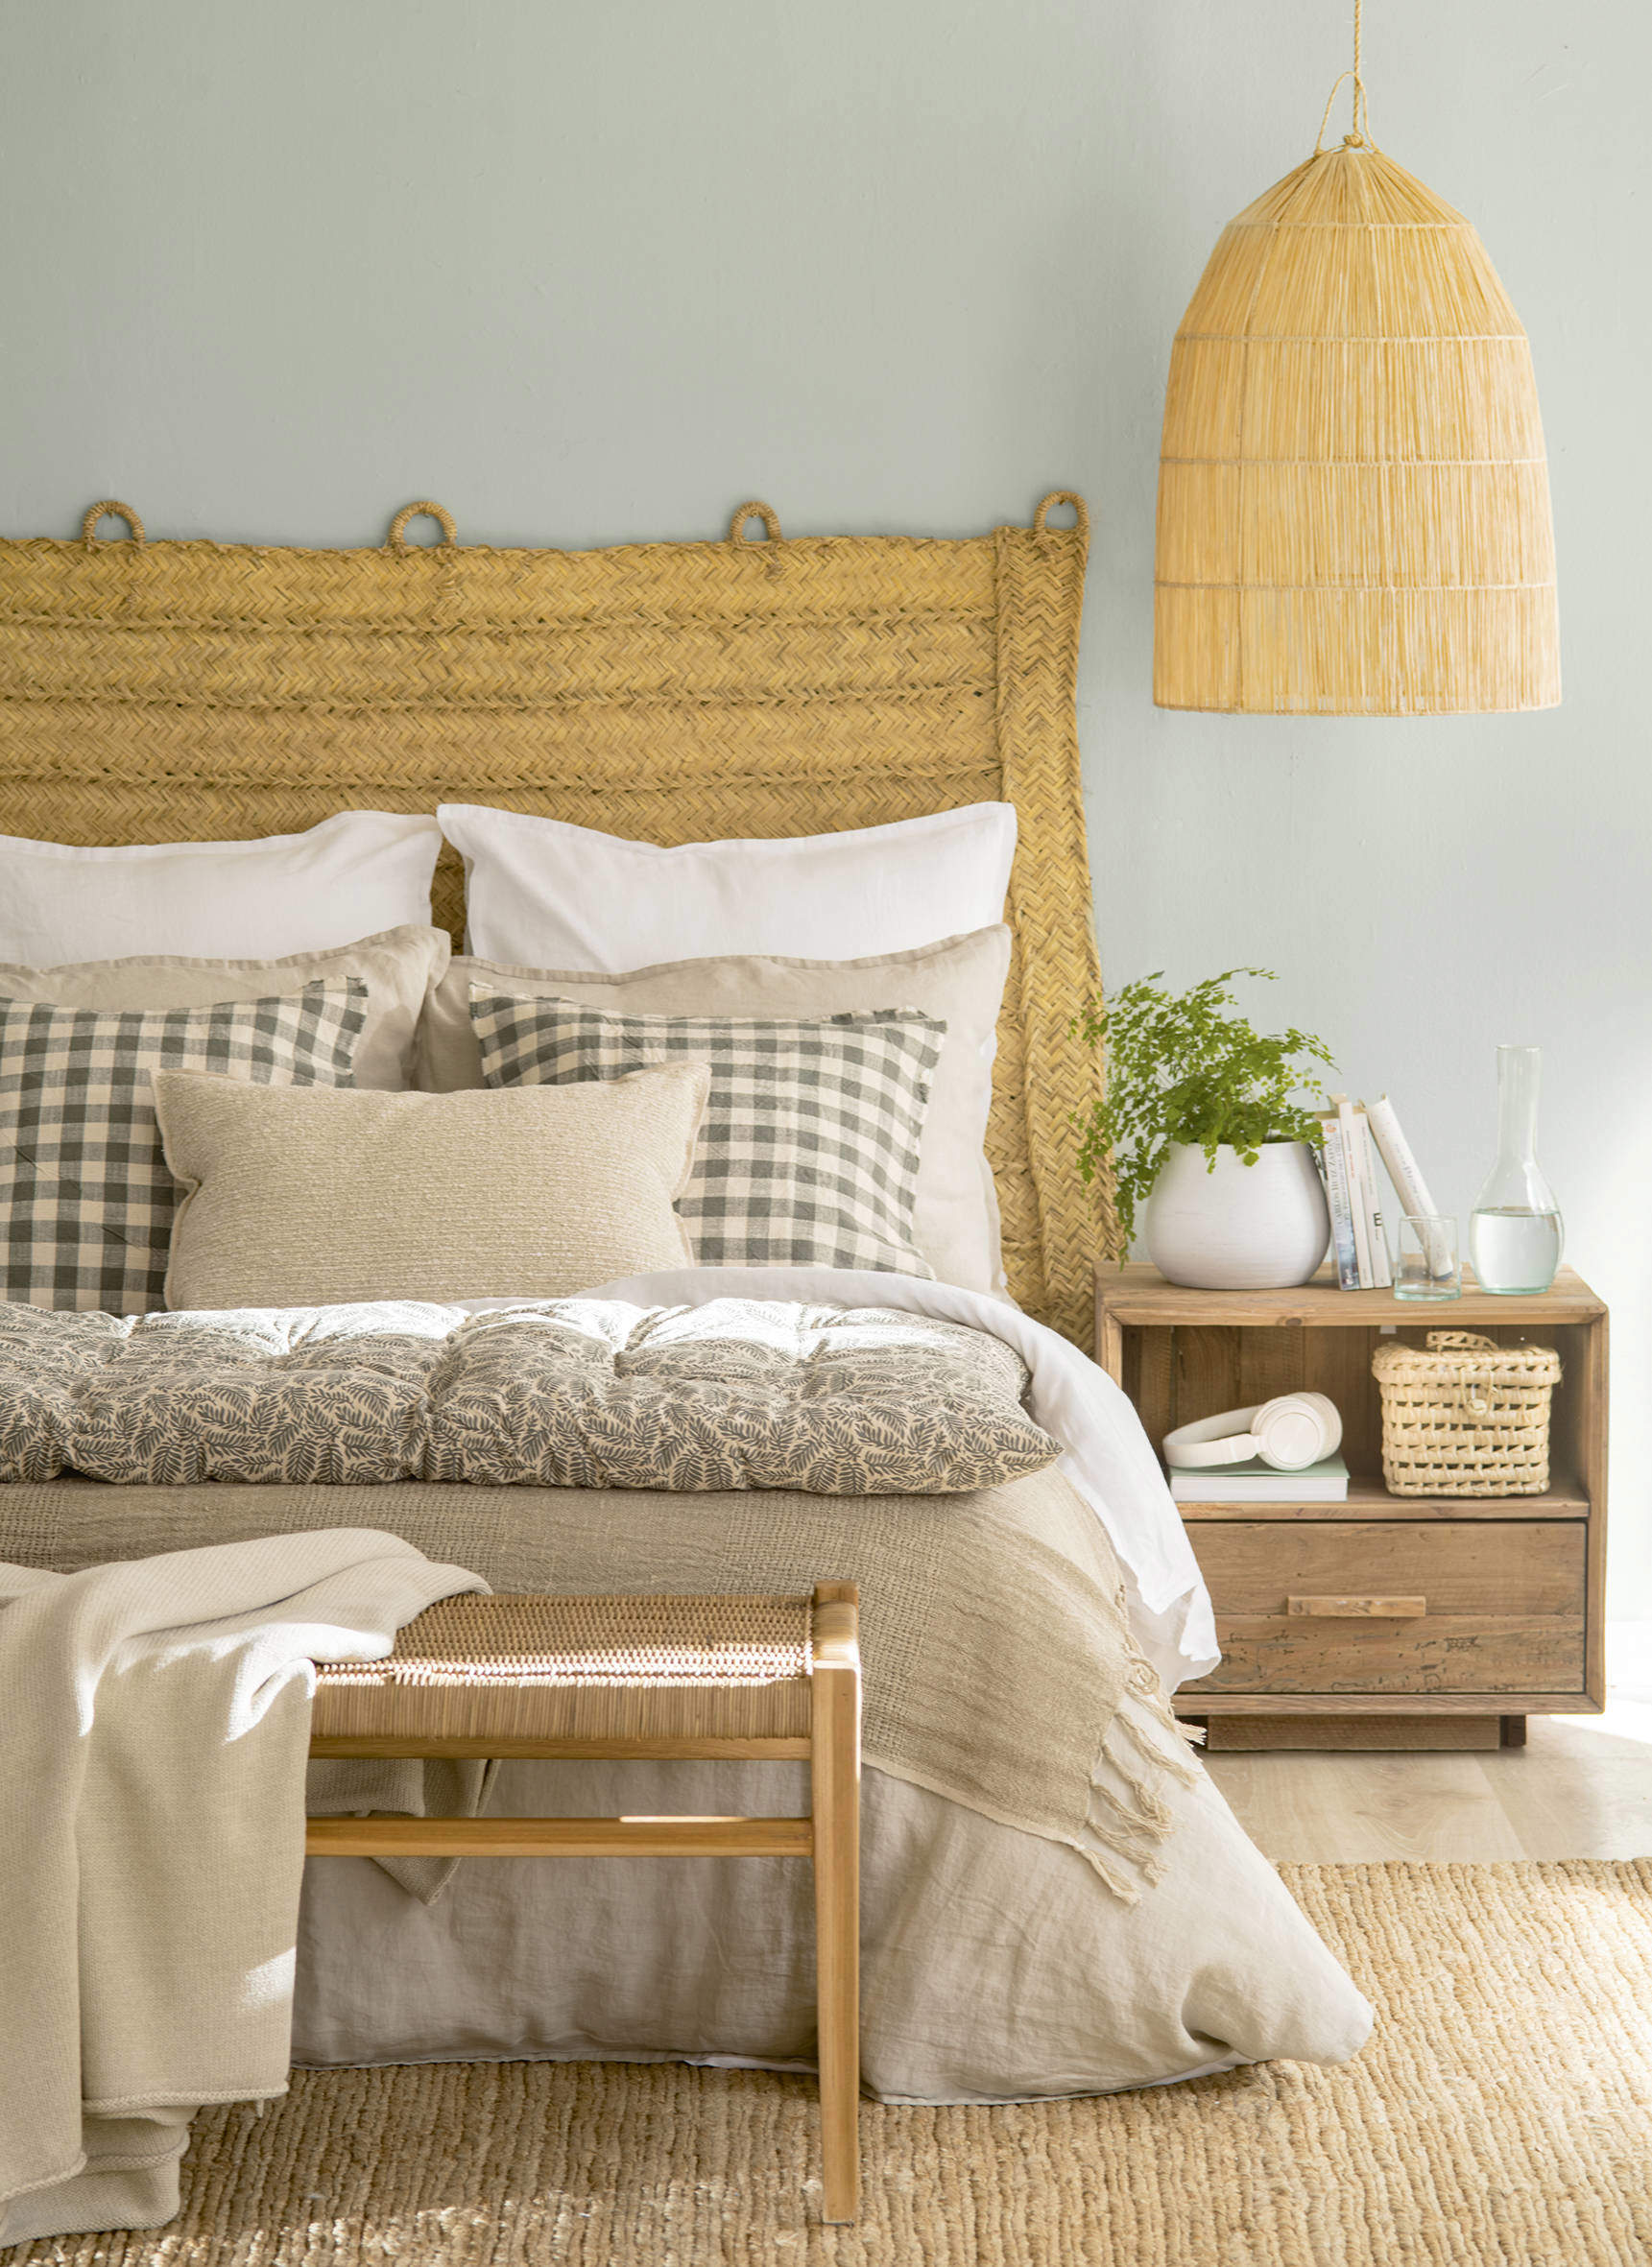 Dormitorio de estilo rústico con cabecero y lámpara en fibras naturales.